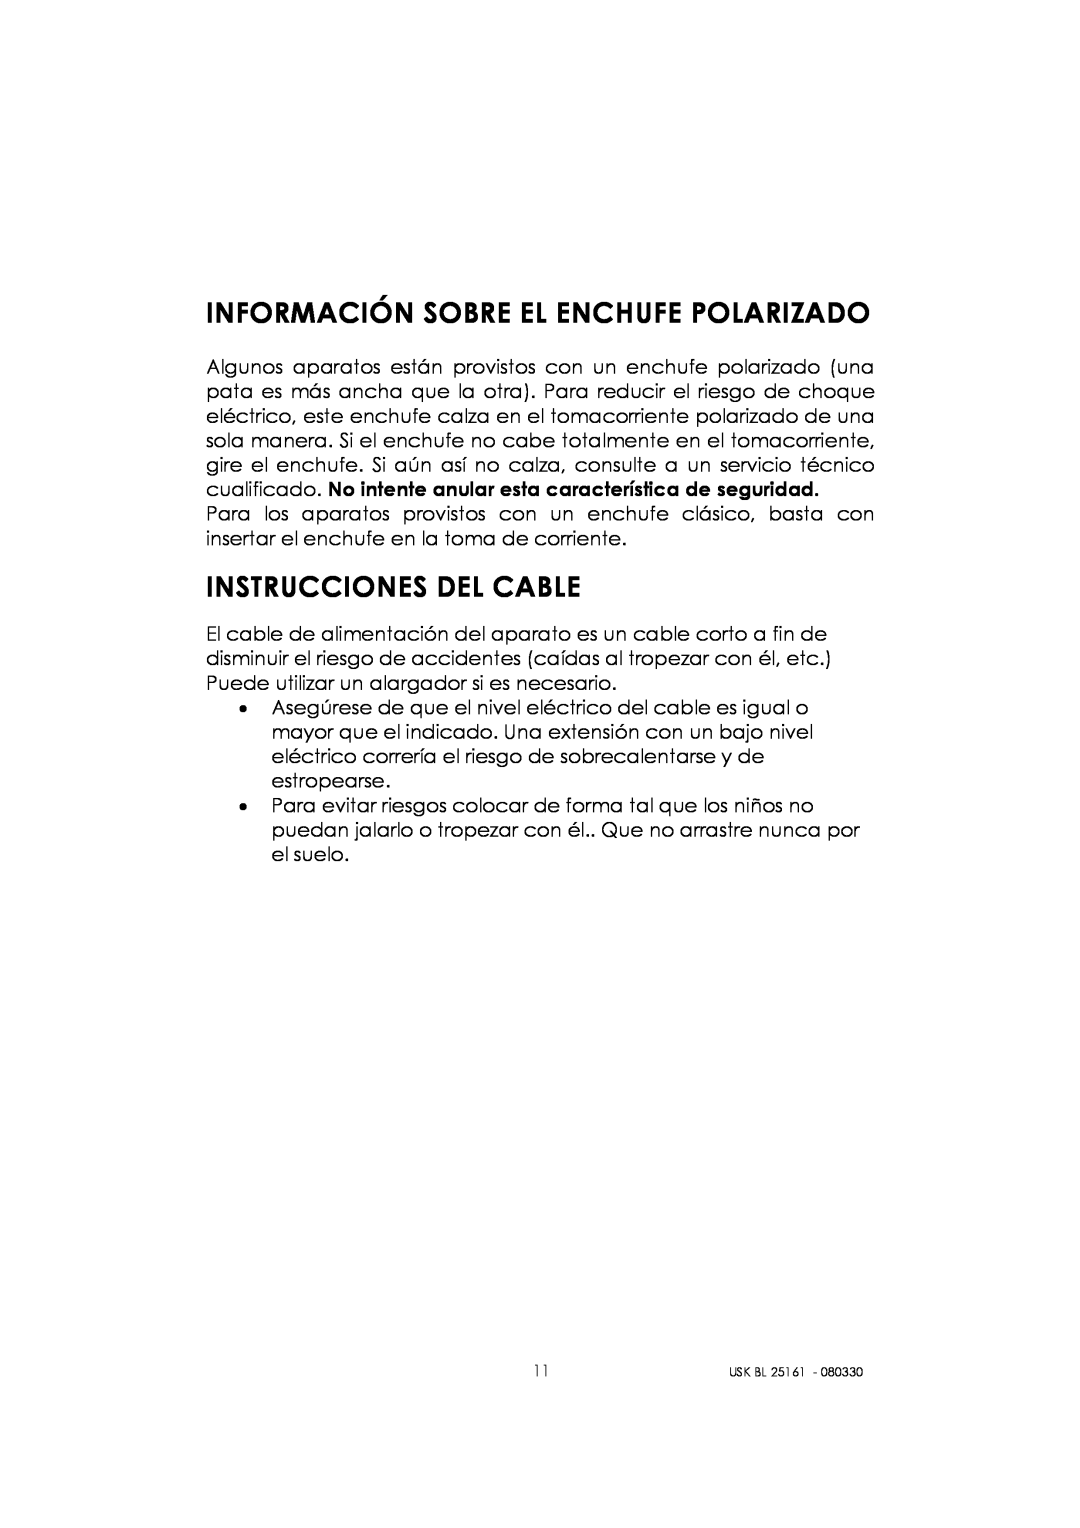 Kalorik usk bl 25161 manual Información Sobre El Enchufe Polarizado, Instrucciones Del Cable 